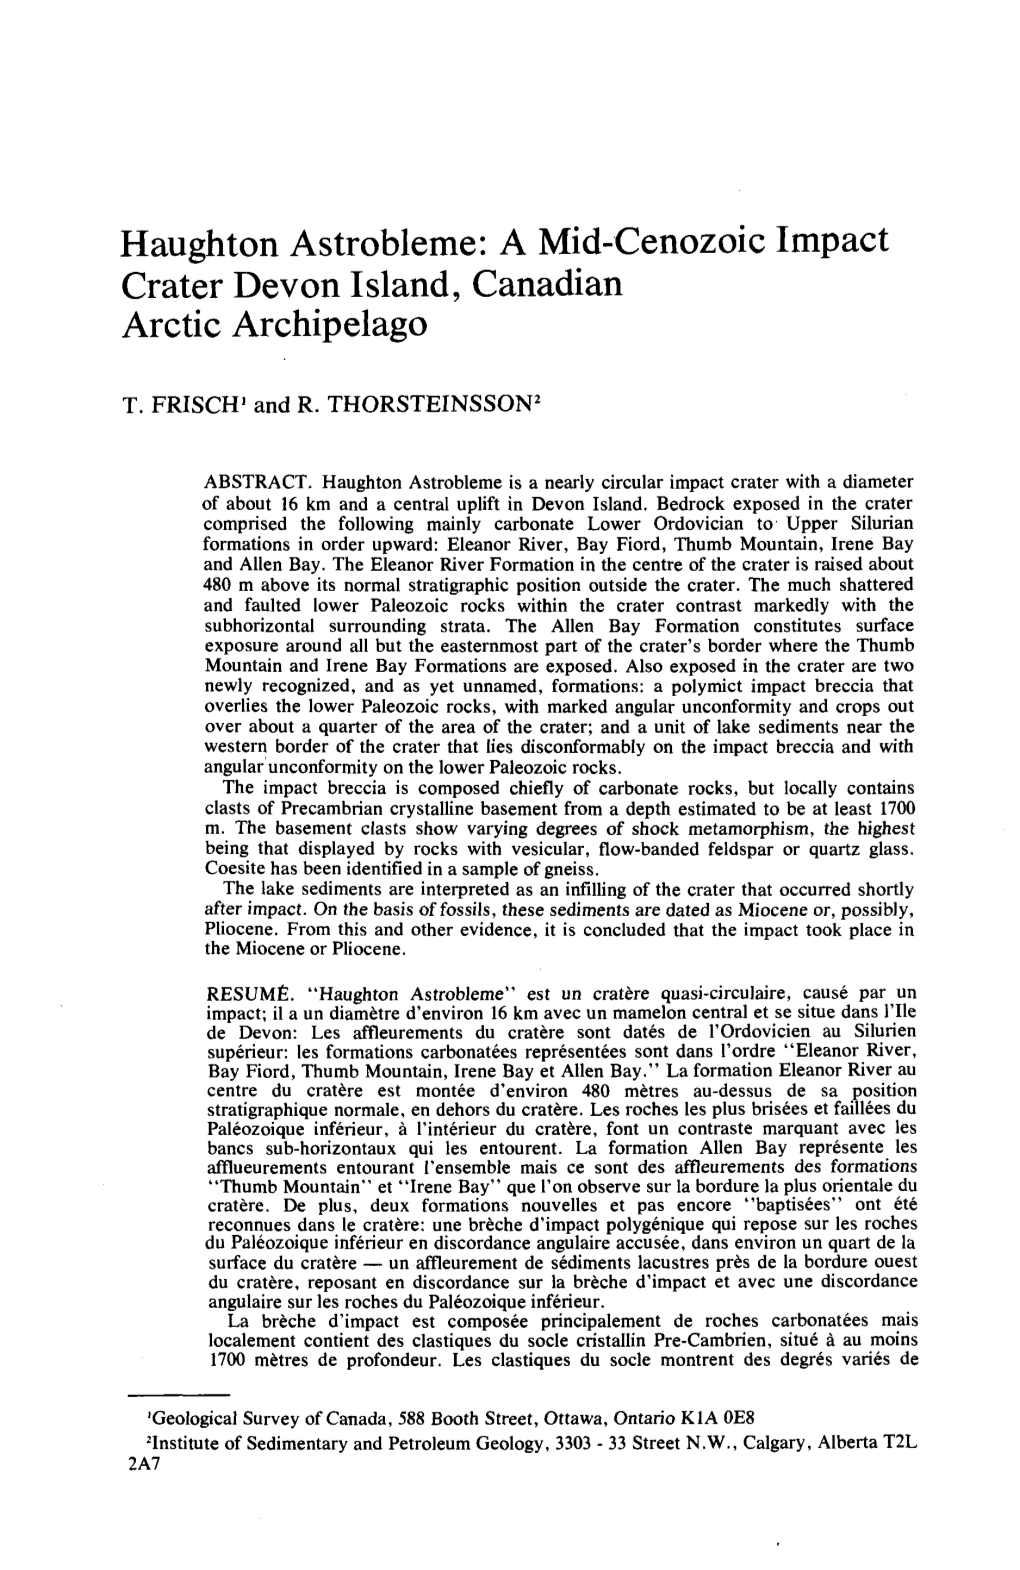 Haughton Astrobleme: a Mid-Cenozoic Impact Crater Devon Island, Canadian Arctic Archipelago